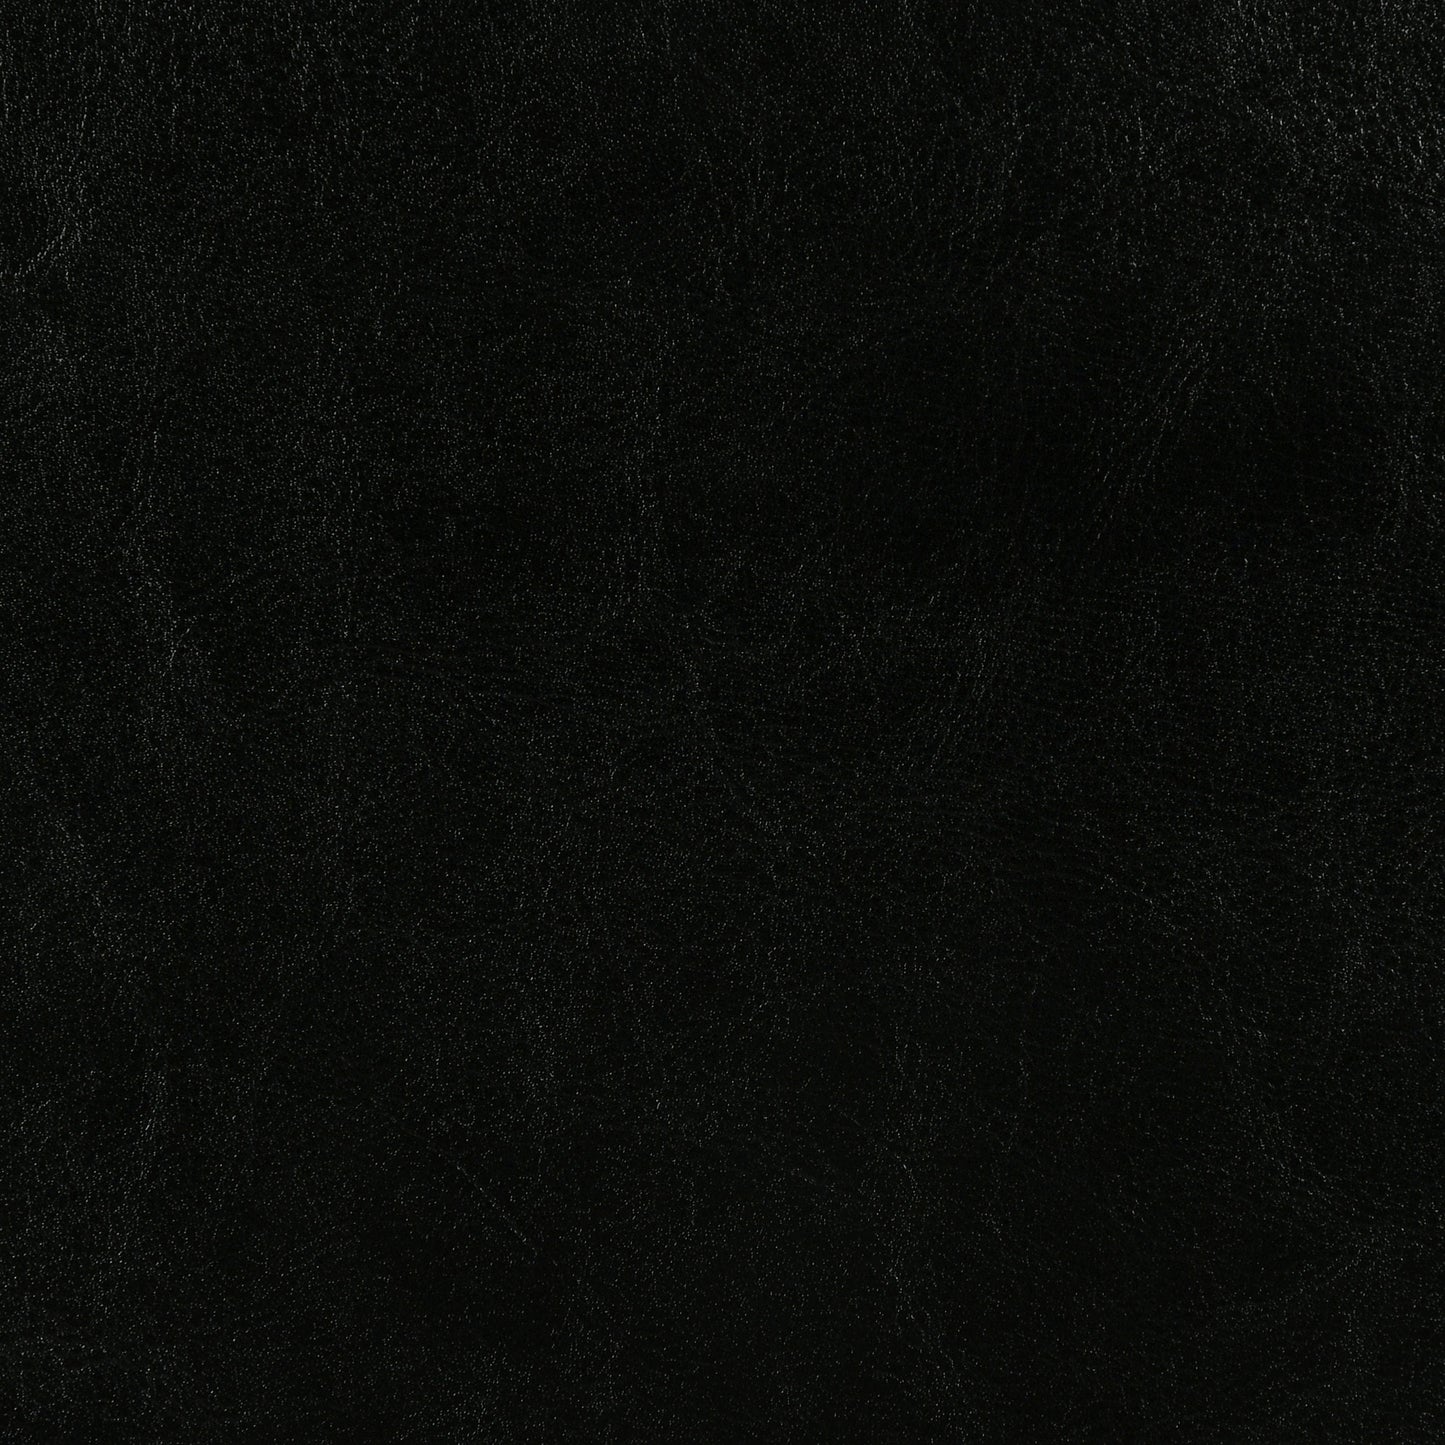 Dorian Upholstered California King Panel Bed Black